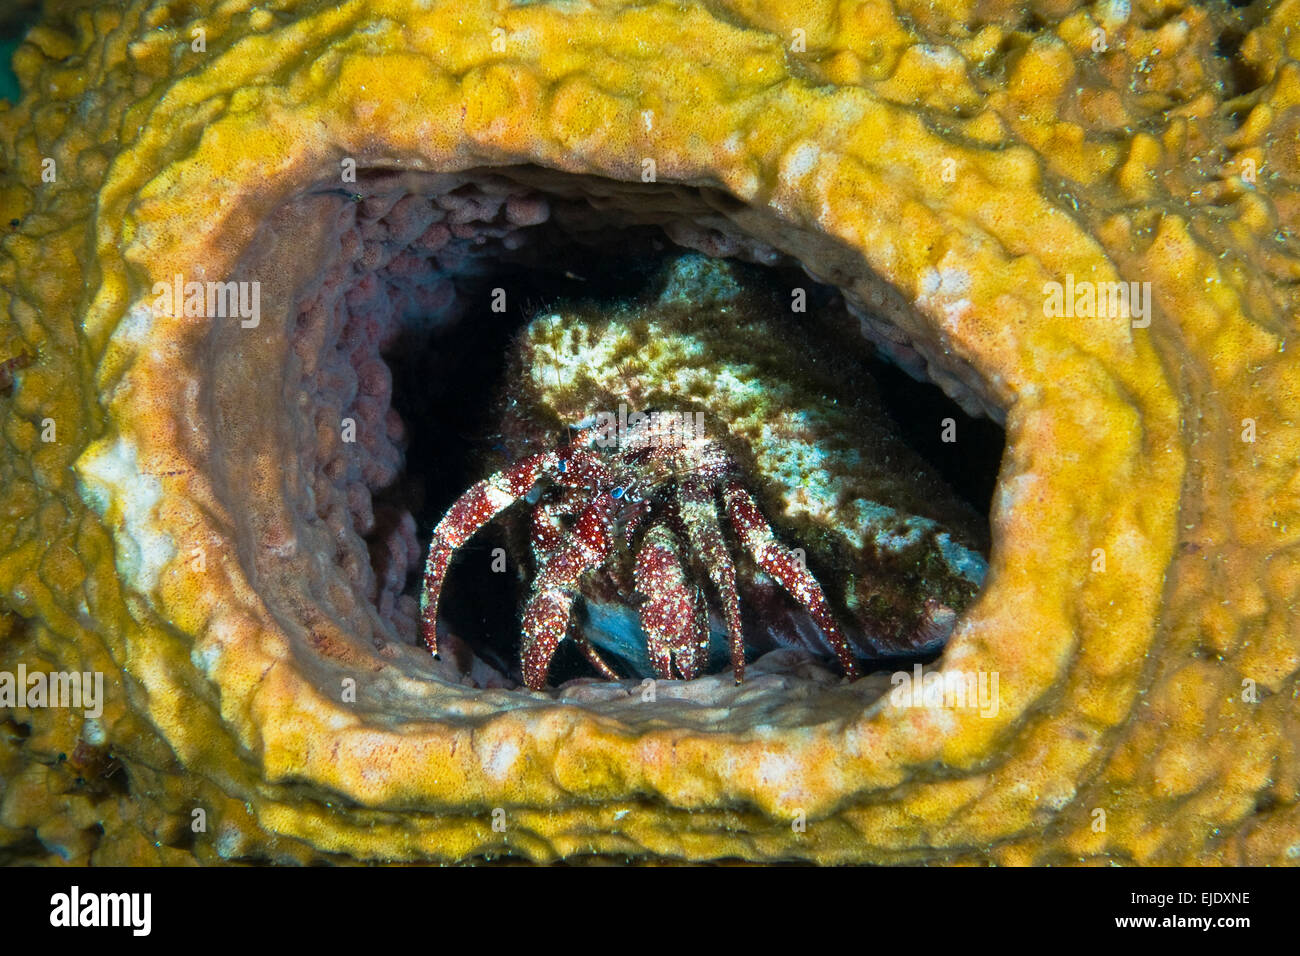 Hermit crab in yellow vase sponge, St. Lucia. Stock Photo